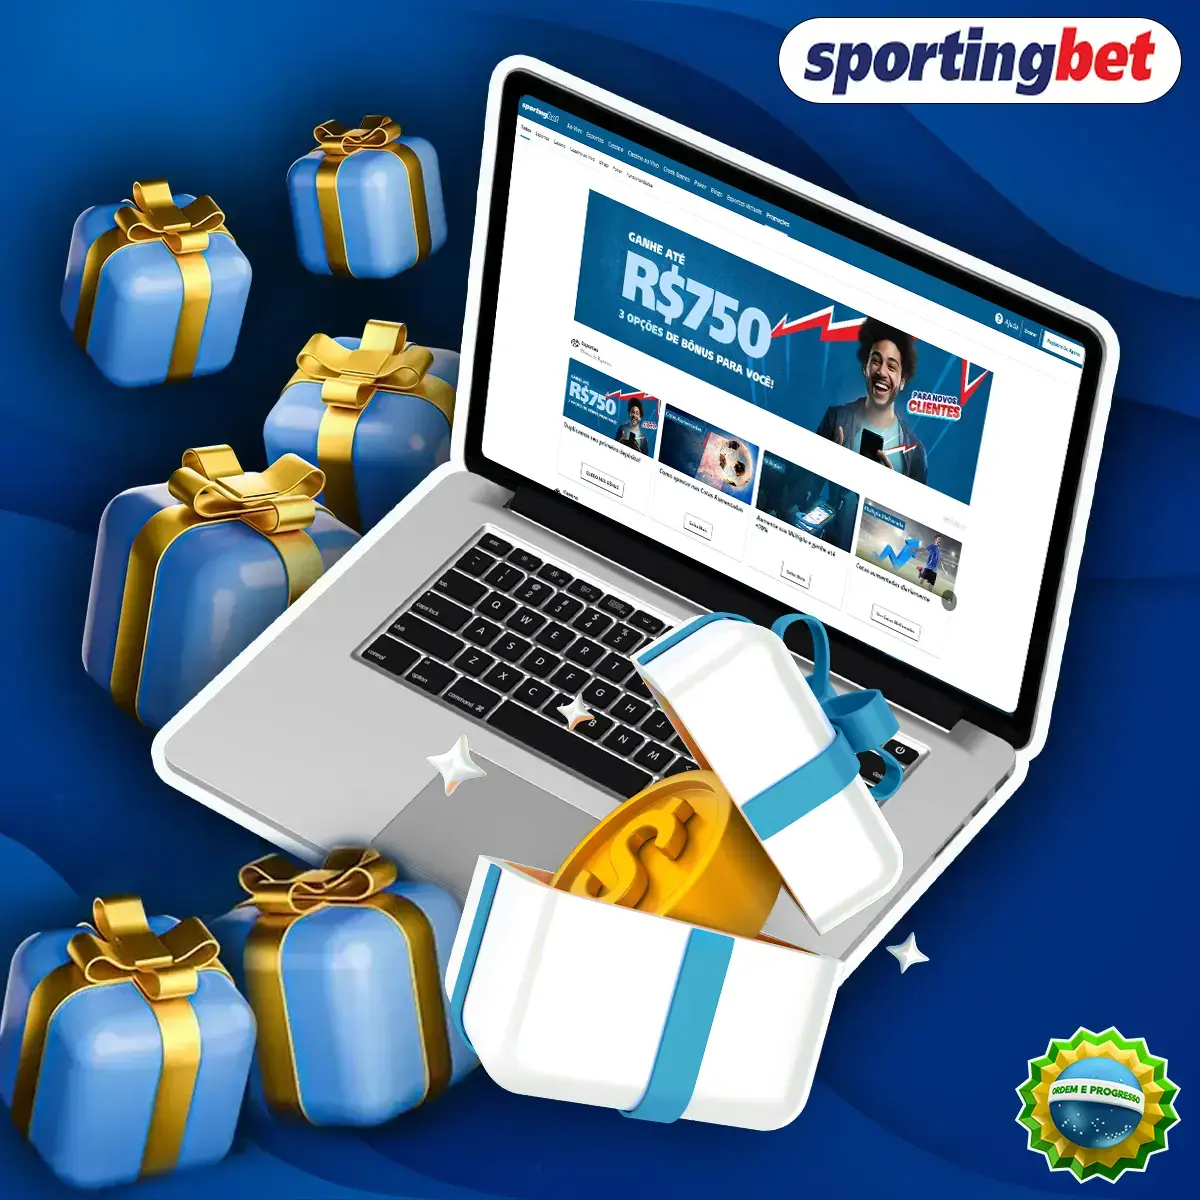 SportingBet - A melhor oferta de bônus no mercado de apostas